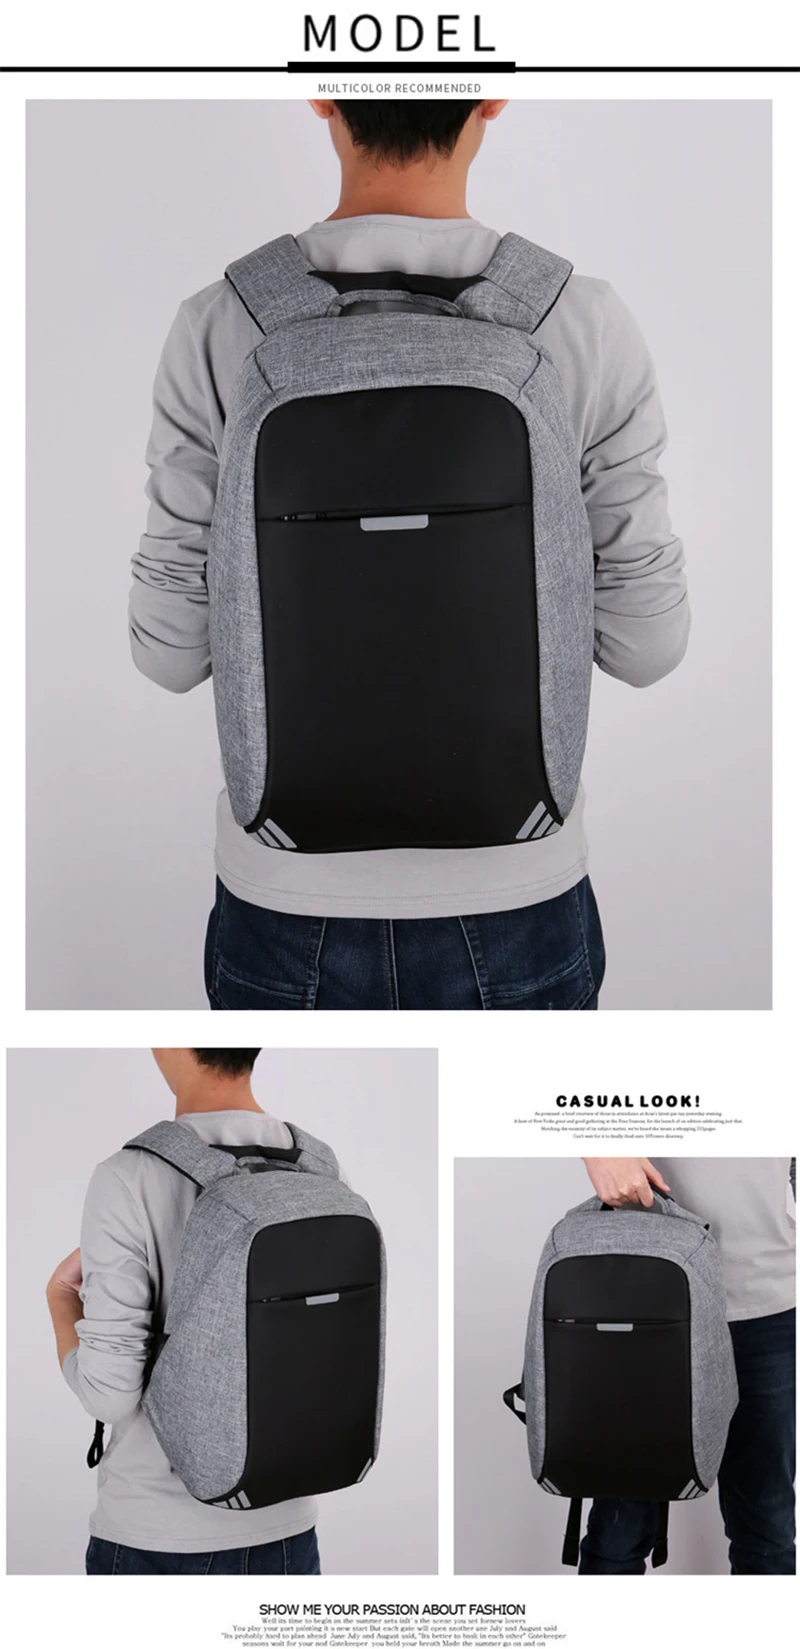 XINGTIANDI Для мужчин рюкзак Anti theft многофункциональный Оксфорд Повседневное ноутбук рюкзак моды Водонепроницаемый дорожная сумка для ноутбука